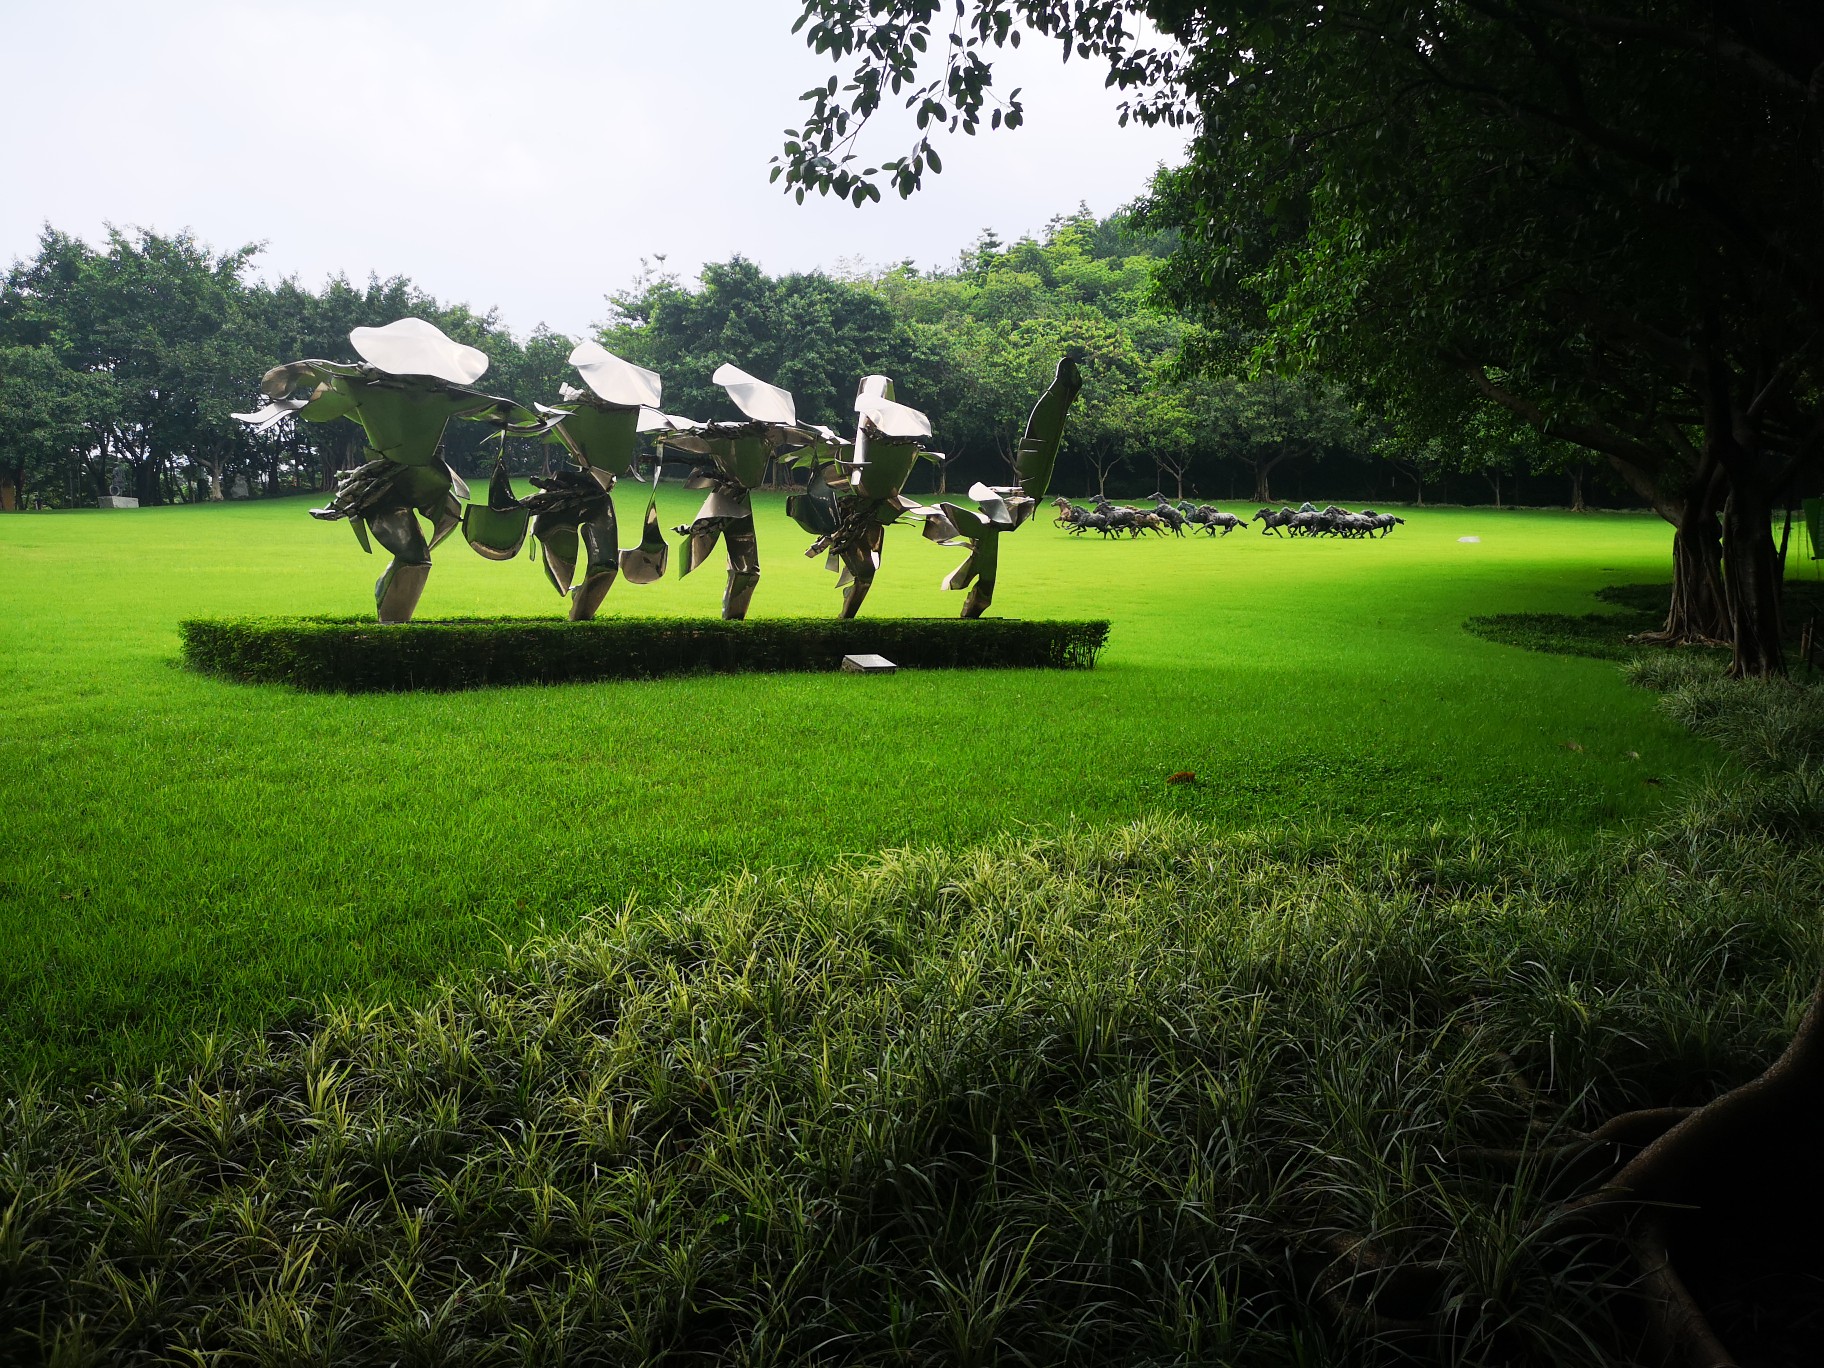 雕塑公园-以雕塑为主题，与园林结合公园。